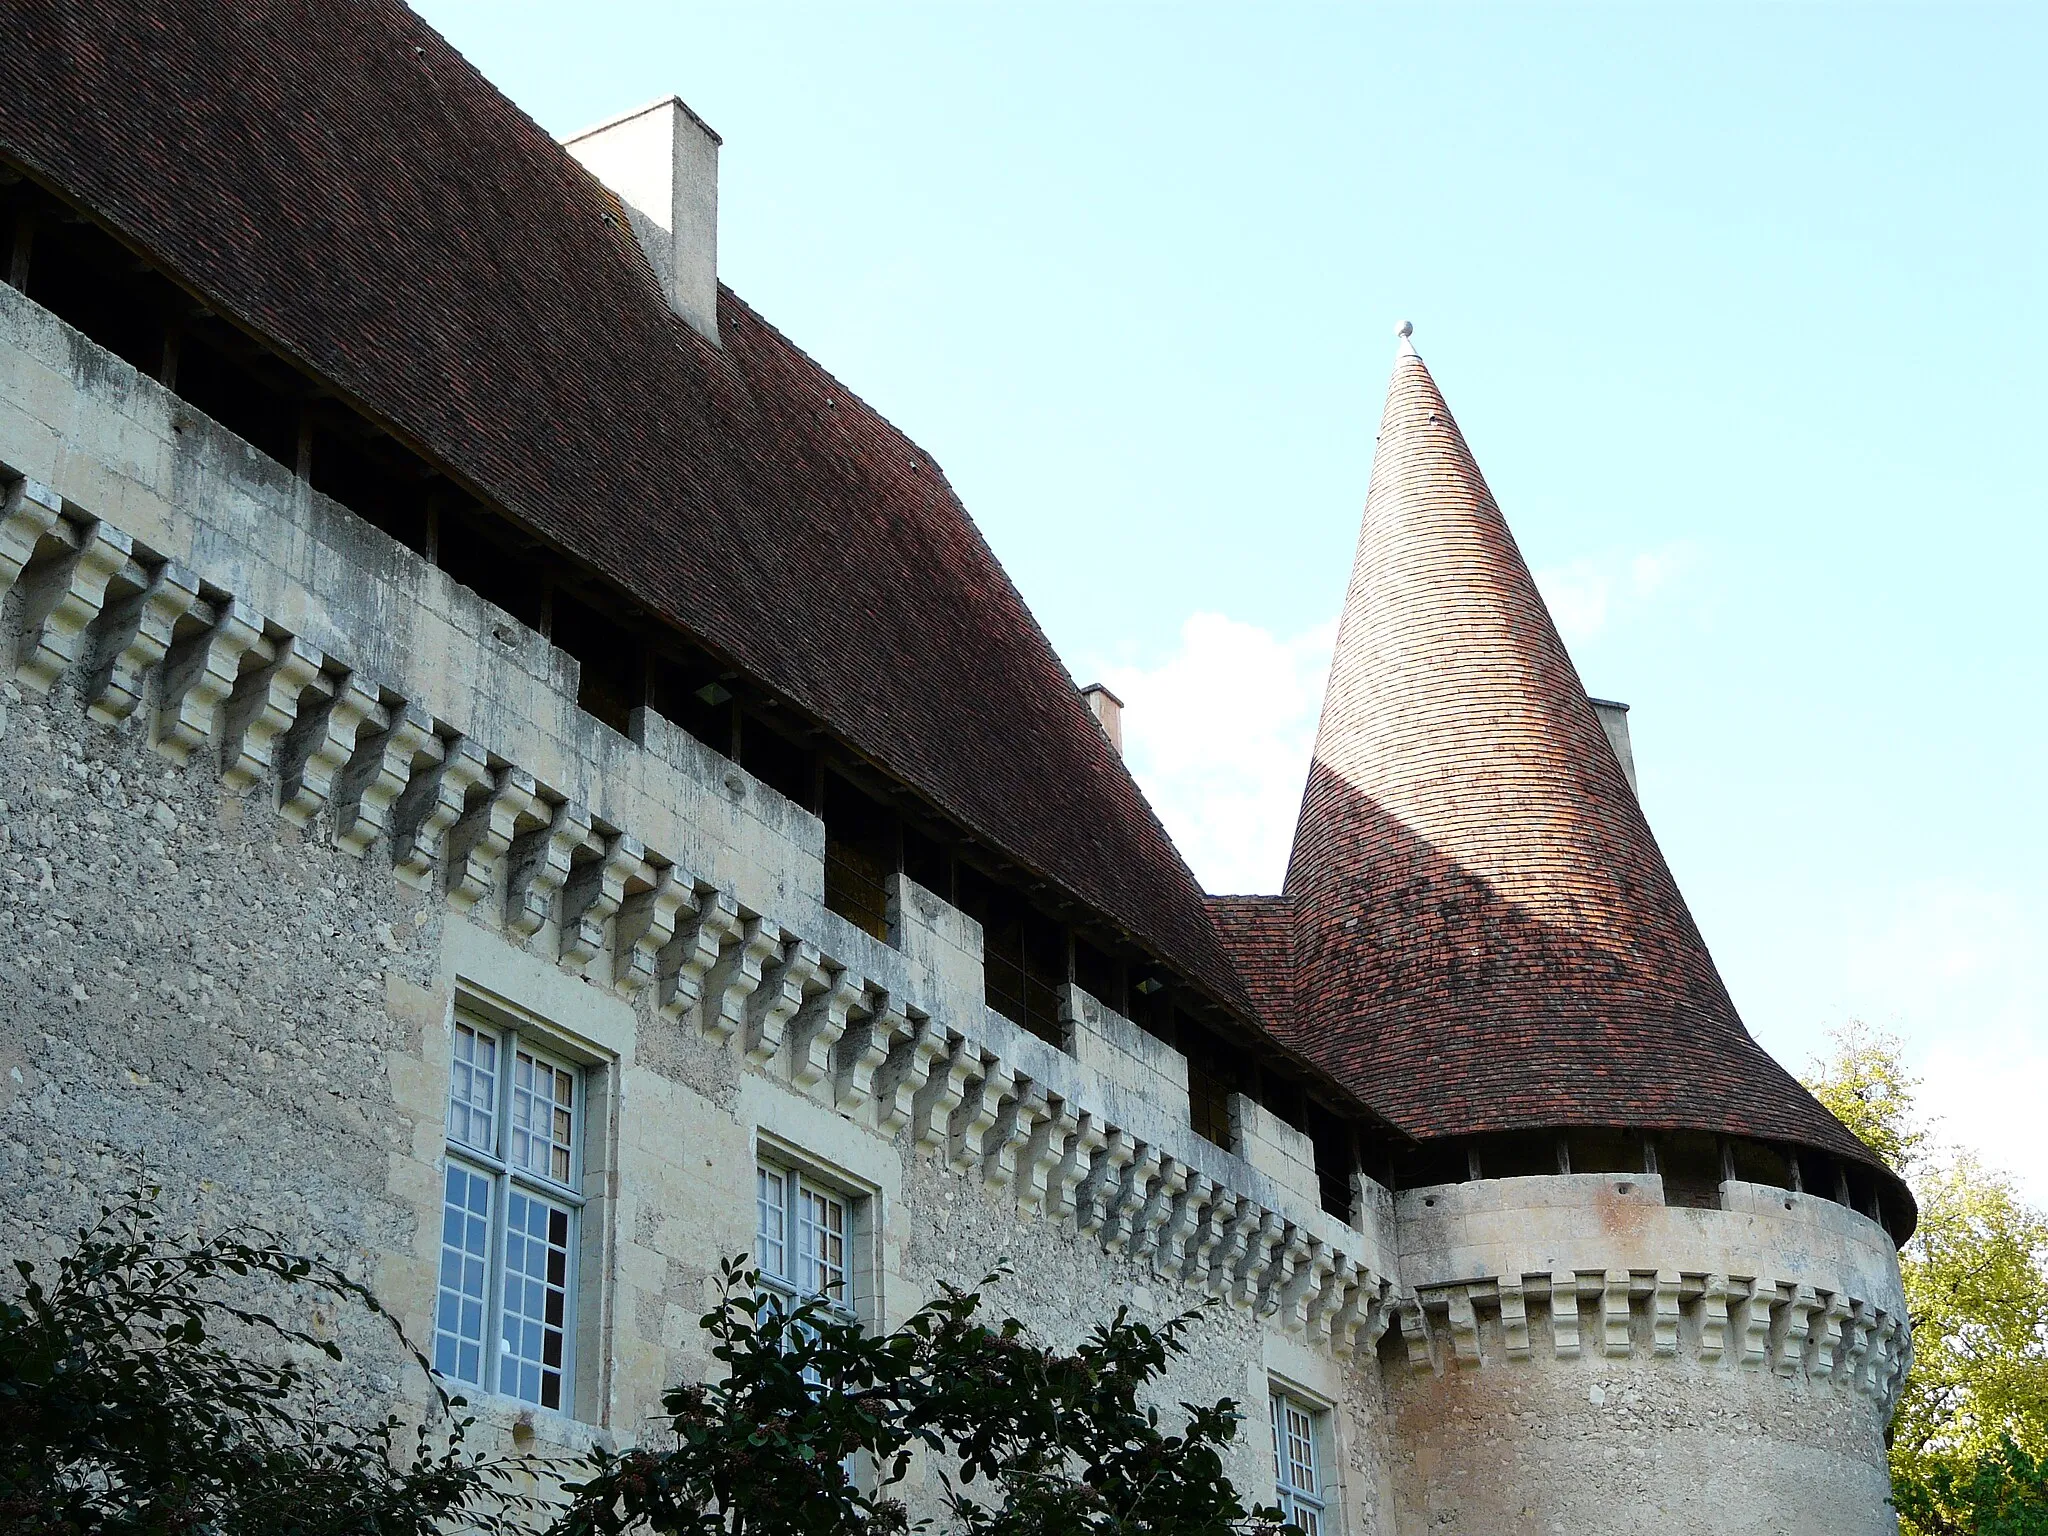 Photo showing: Vue extérieure du chemin de ronde, château de Puyferrat, Saint-Astier, Dordogne, France.